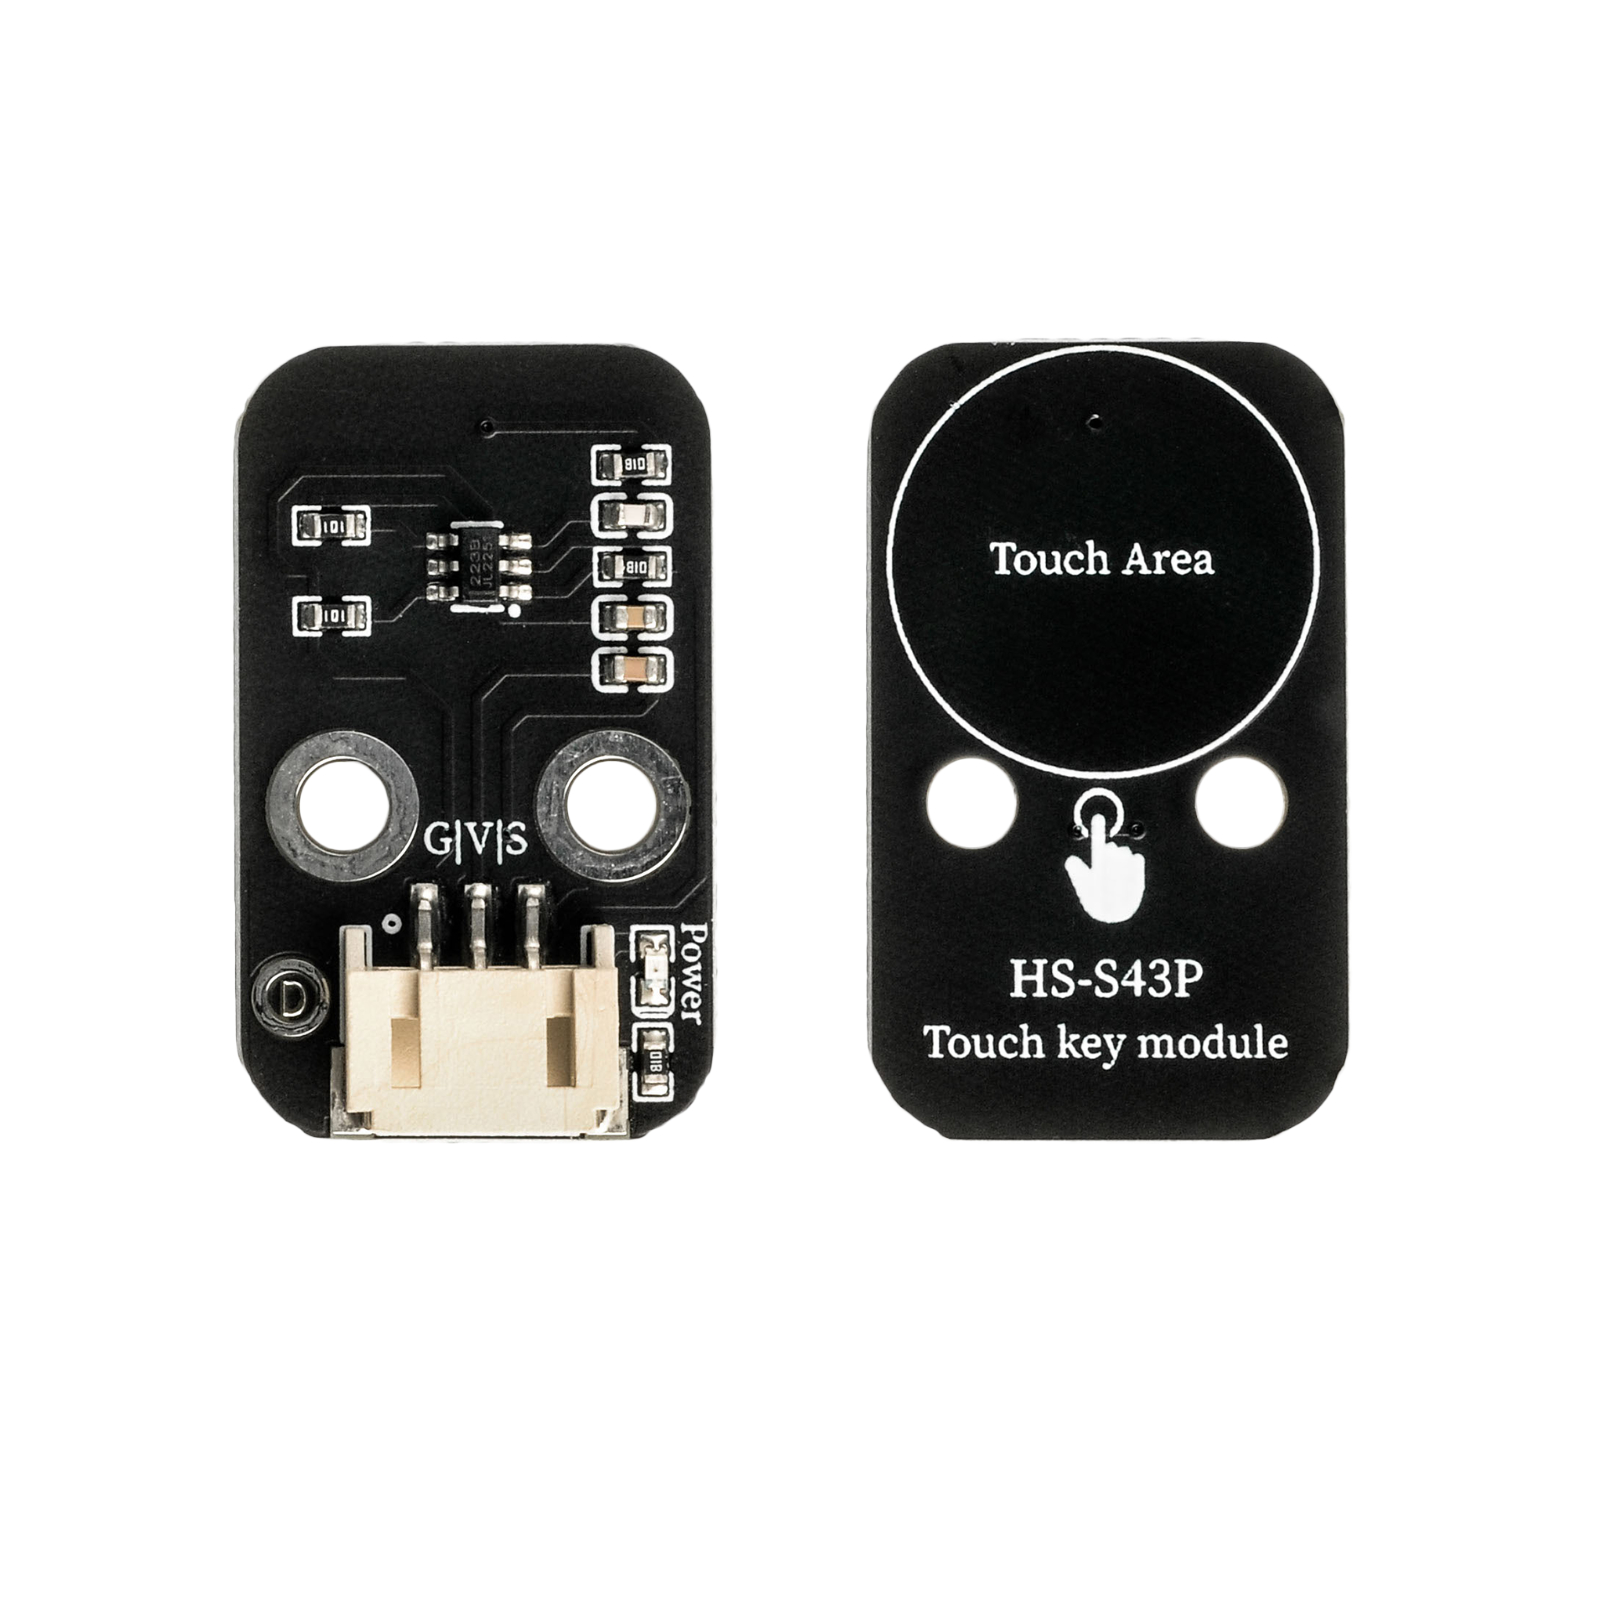 HS-S43P 触摸感应传感器